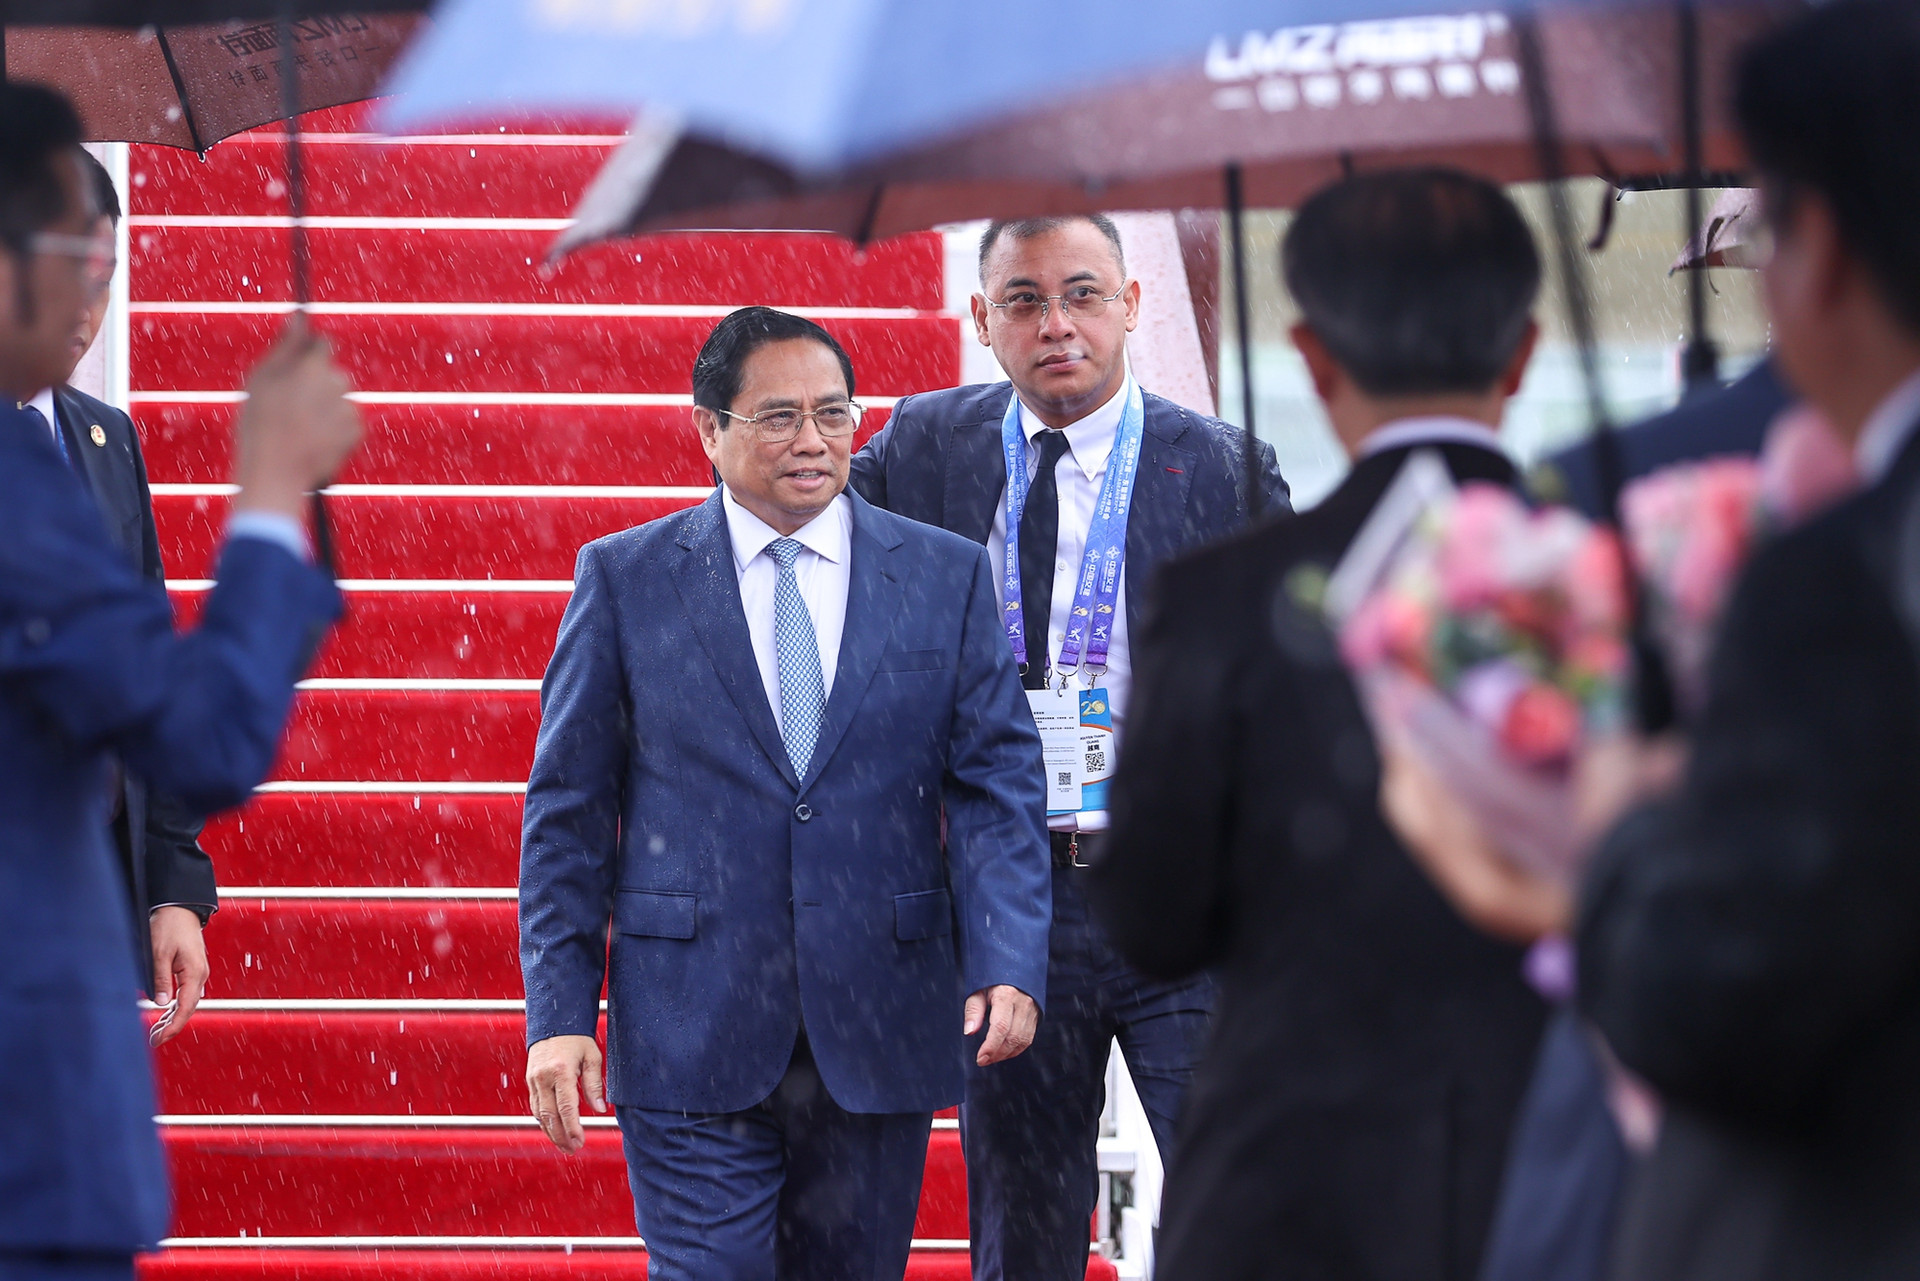 Chùm ảnh: Thủ tướng Phạm Minh Chính bắt đầu chuyến công tác tại Trung Quốc - Ảnh 1.